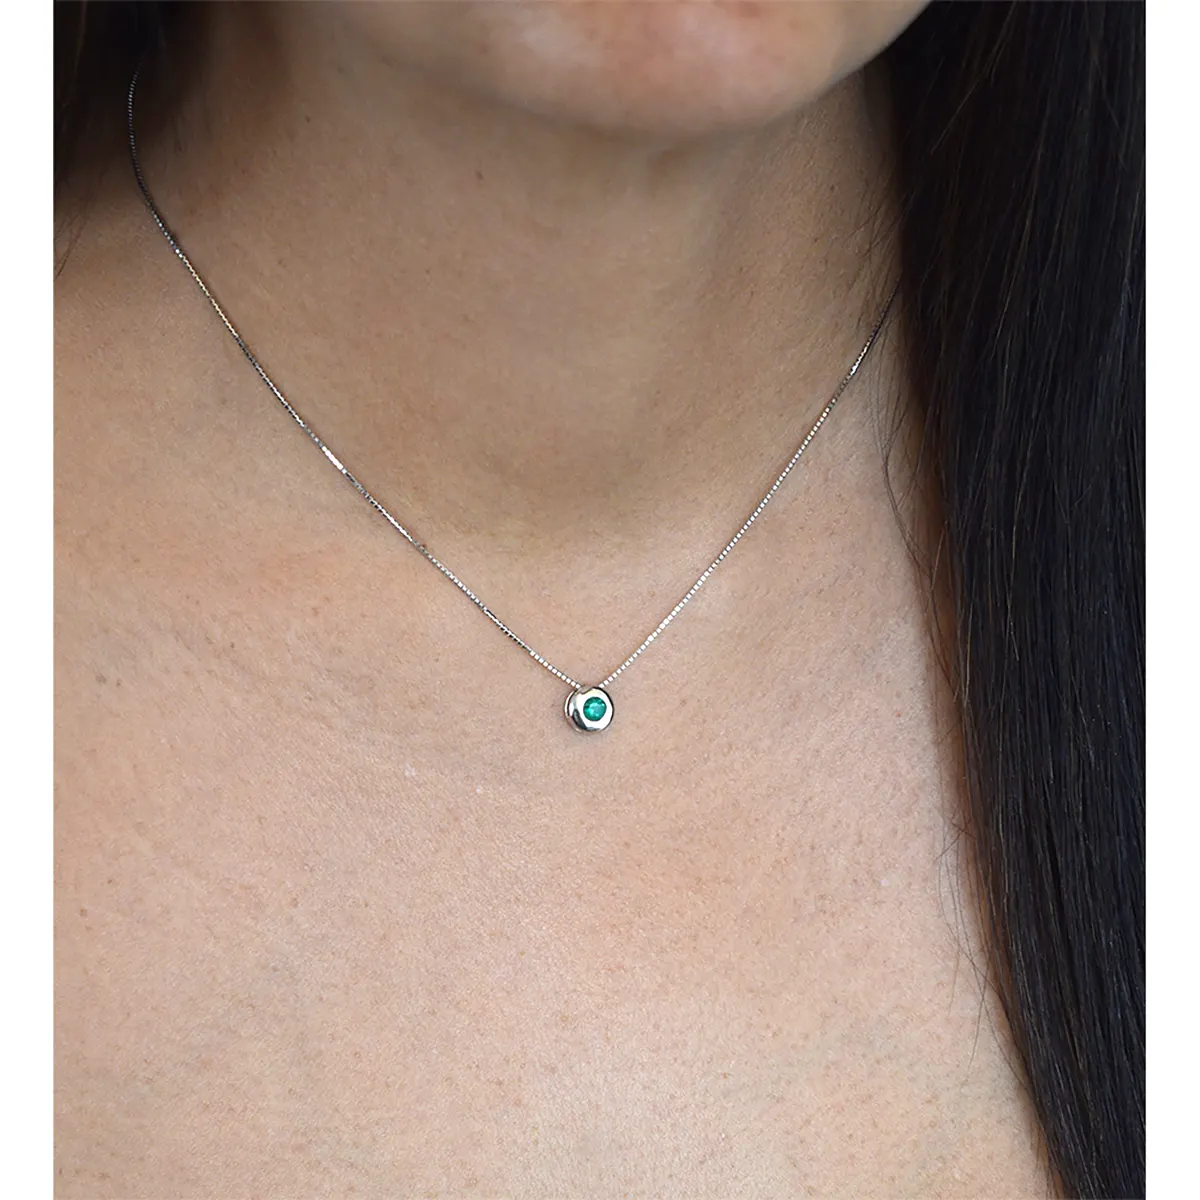 genuine_natural_emerald_necklace_for_sale.webp